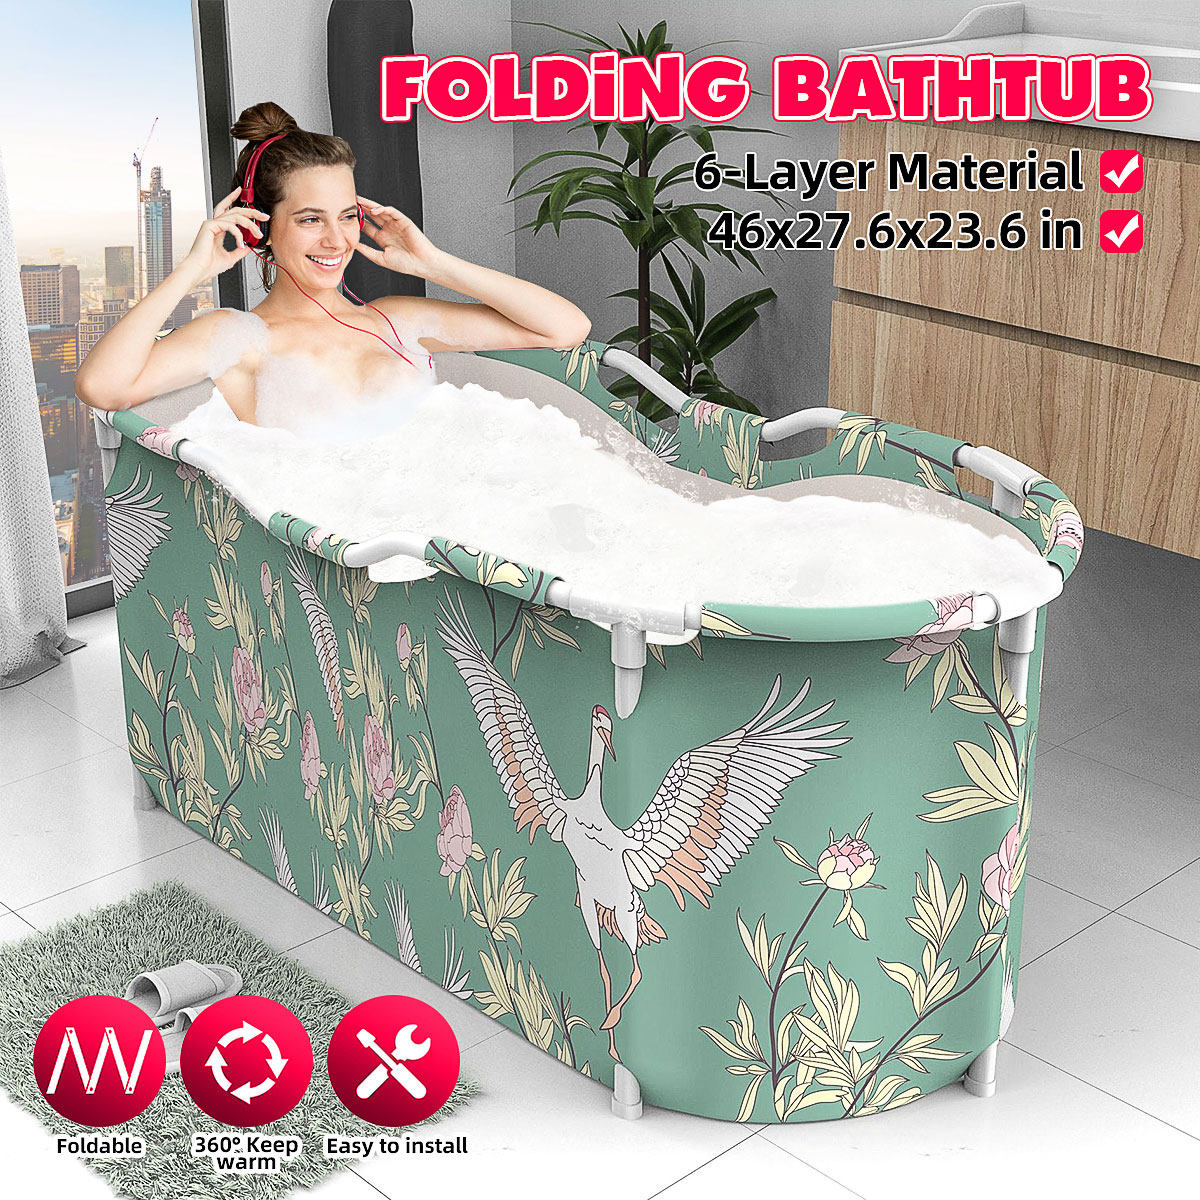 46x27.6x23.6 inch Portable Bathtub Folding Water Tub Indoor Outdoor Room Adult Spa Foldable Bath Bucket 24